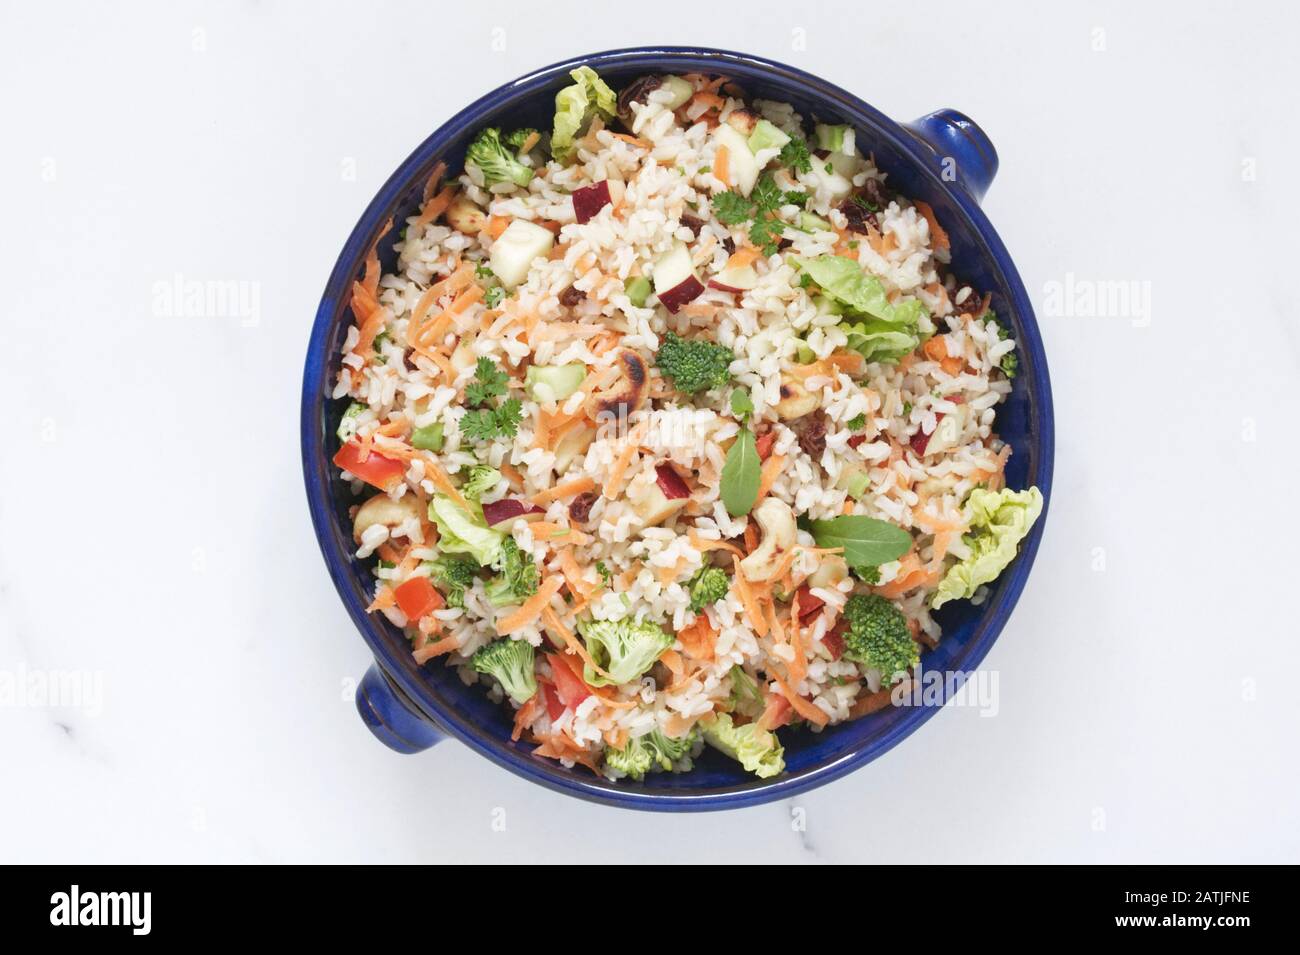 Brauner Reissalat in einer Schüssel auf einer Marmoroberfläche. Stockfoto